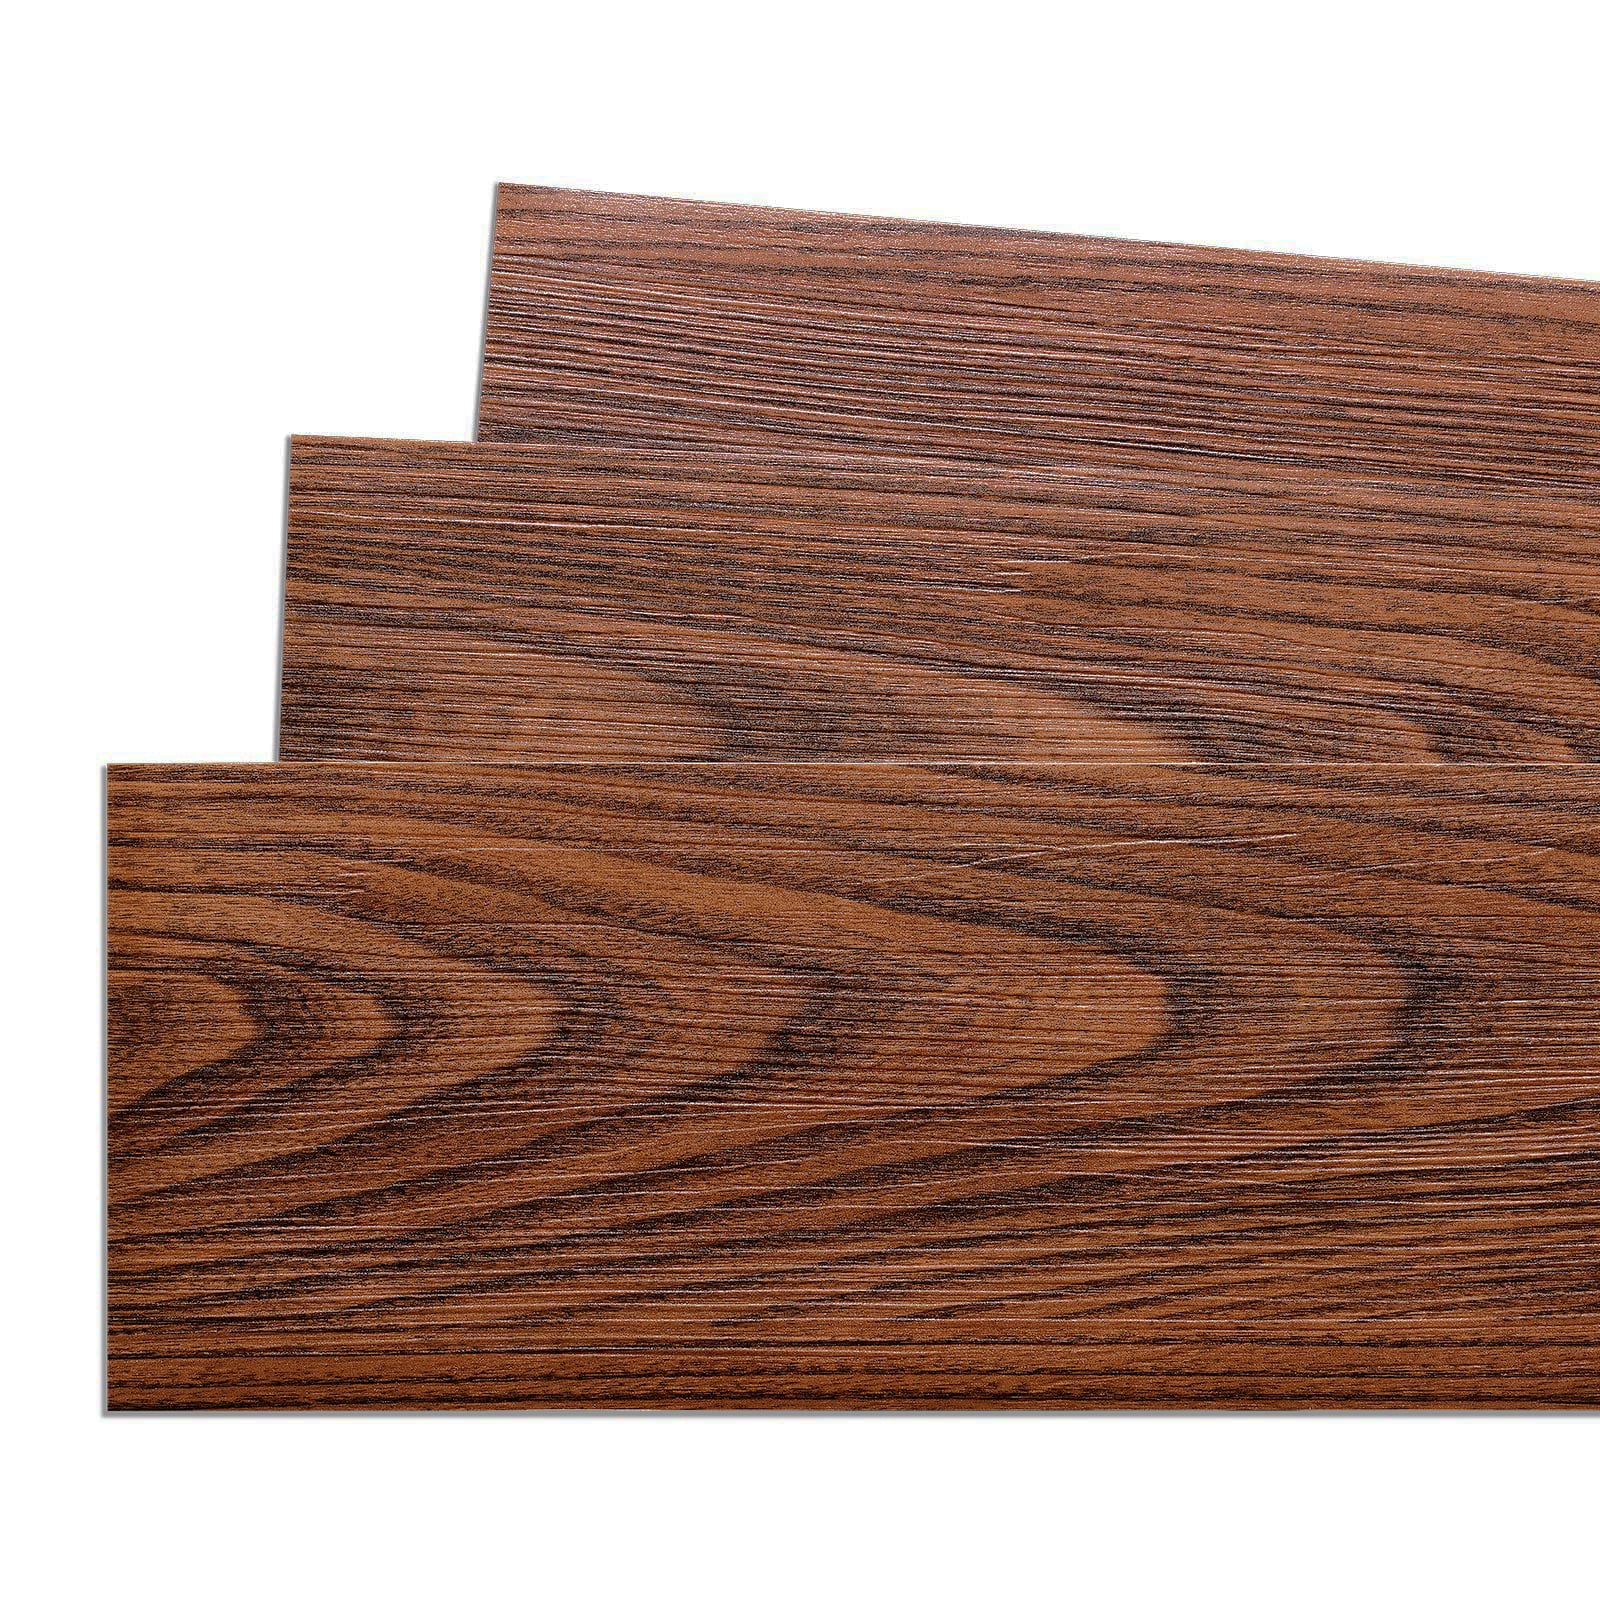 Homease PVC Peel and Stick Vinyl Flooring Roll 23x 196/32 Sq.Ft,Thicken  Self-Adhesive Vinyl Wood Planks - Waterproof, Wear-Resistant,Easy DIY